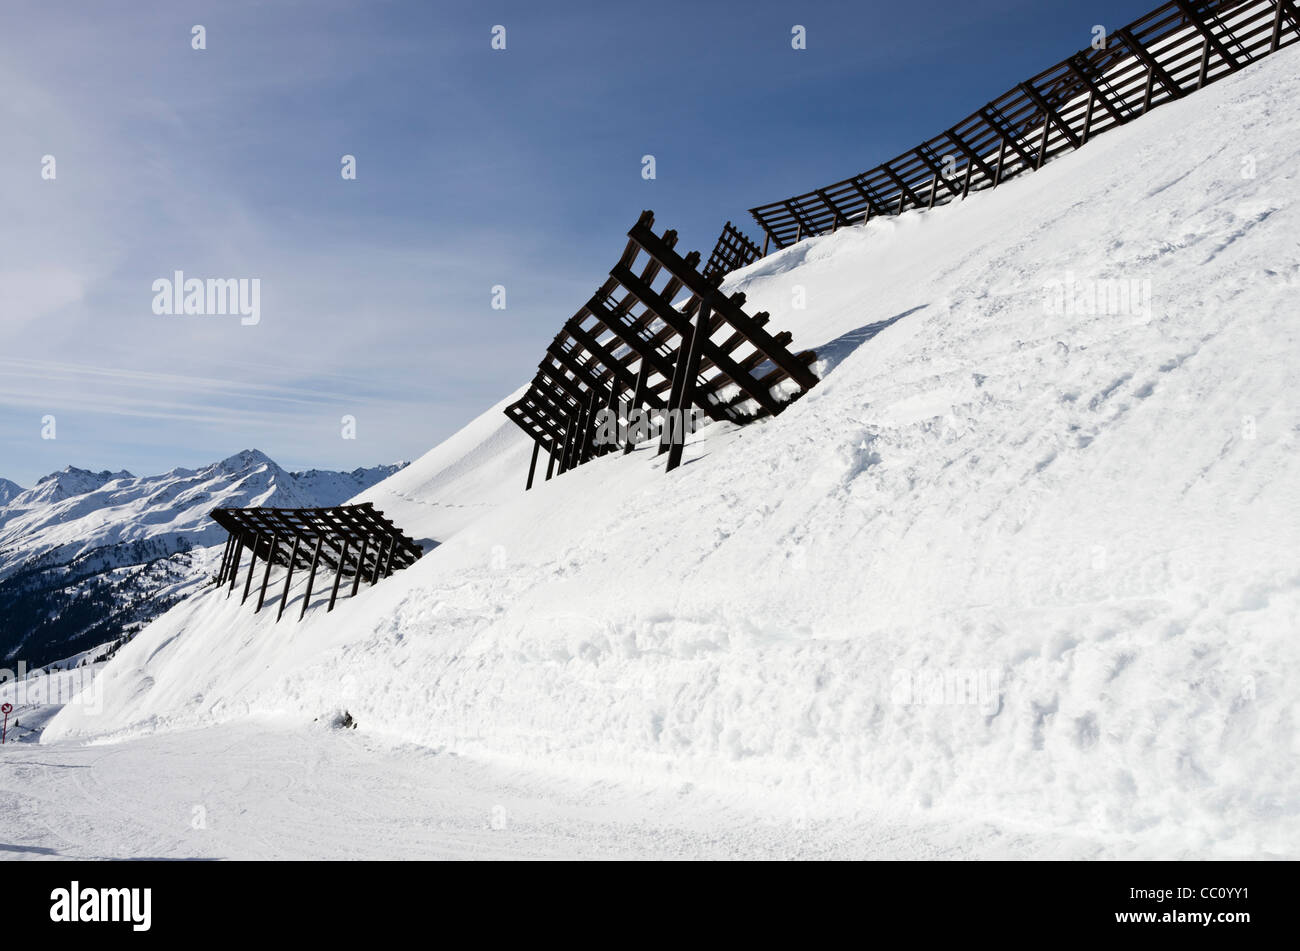 Snow Control Barrieren zum Schutz der Piste Ski Hang unterhalb von Lawinengefahr im Winter in St. Anton am Arlberg Tirol Österreich Stockfoto